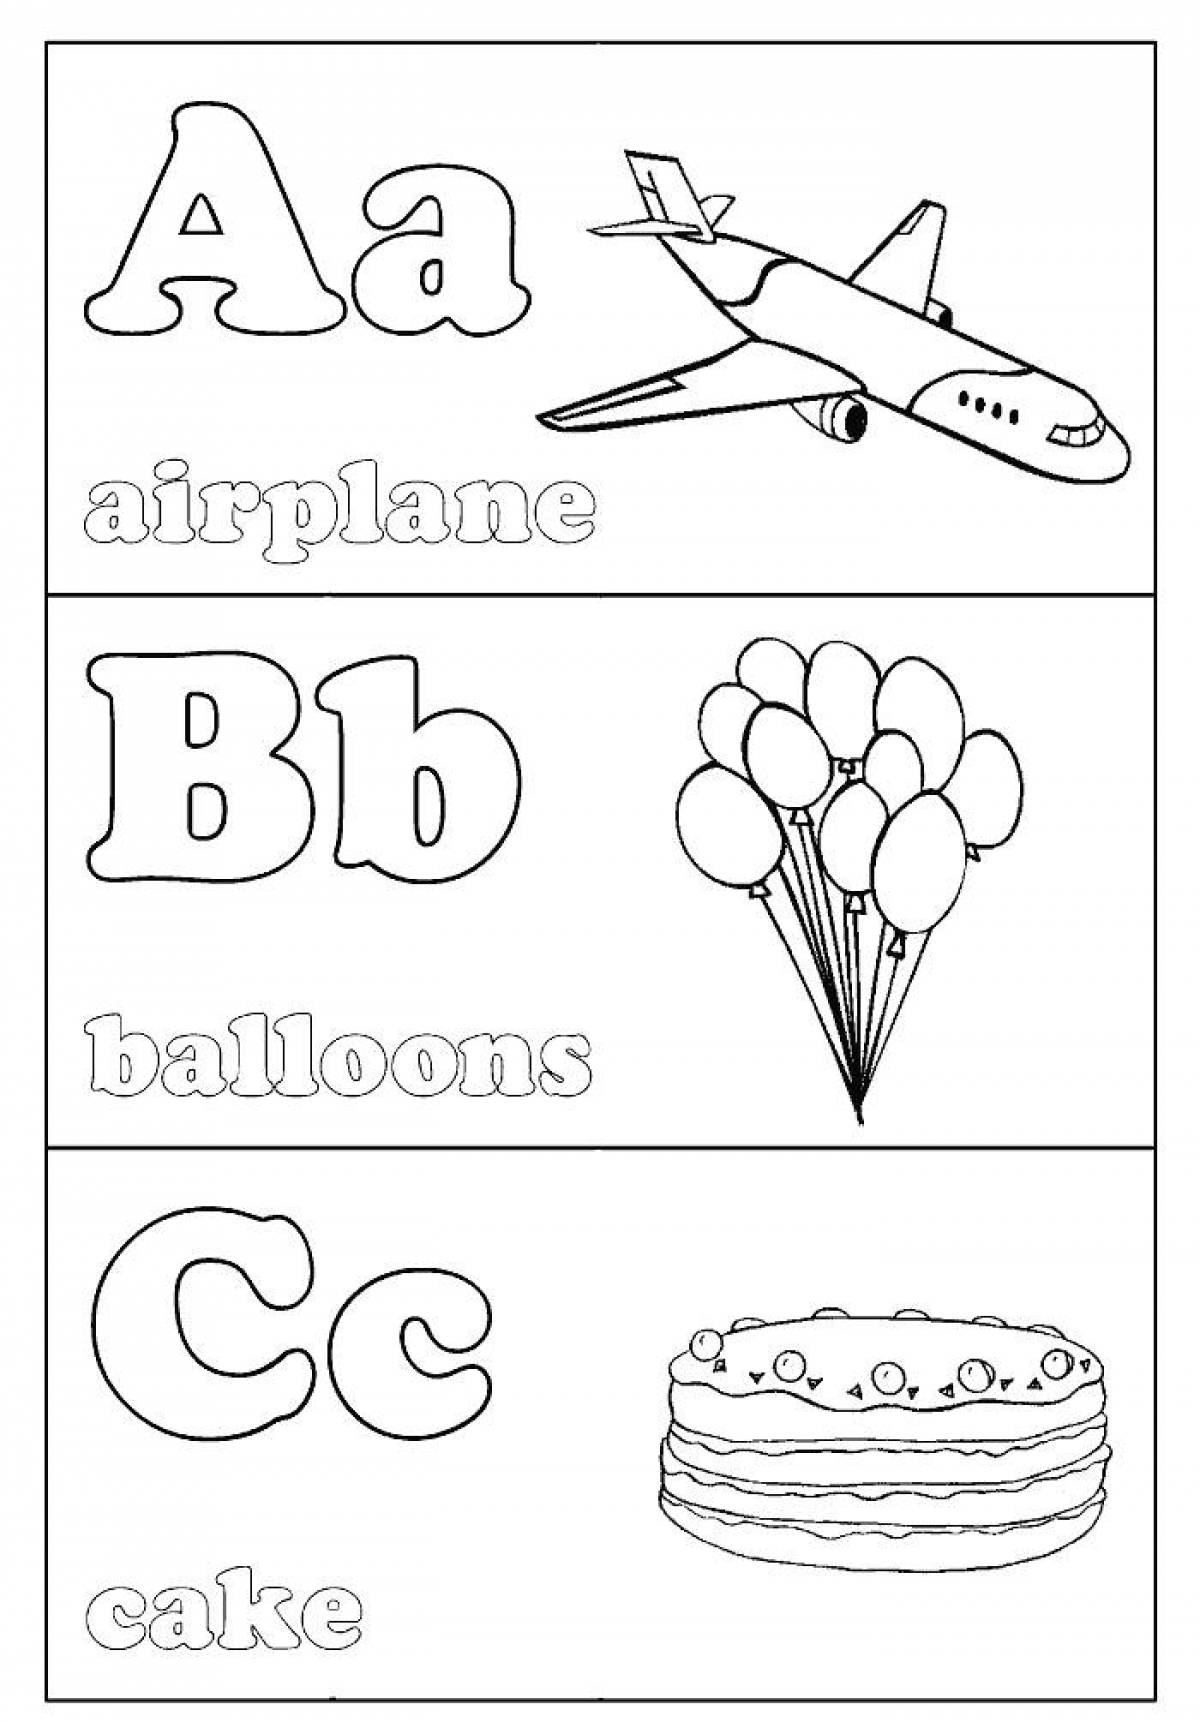 Joyful english alphabet coloring page